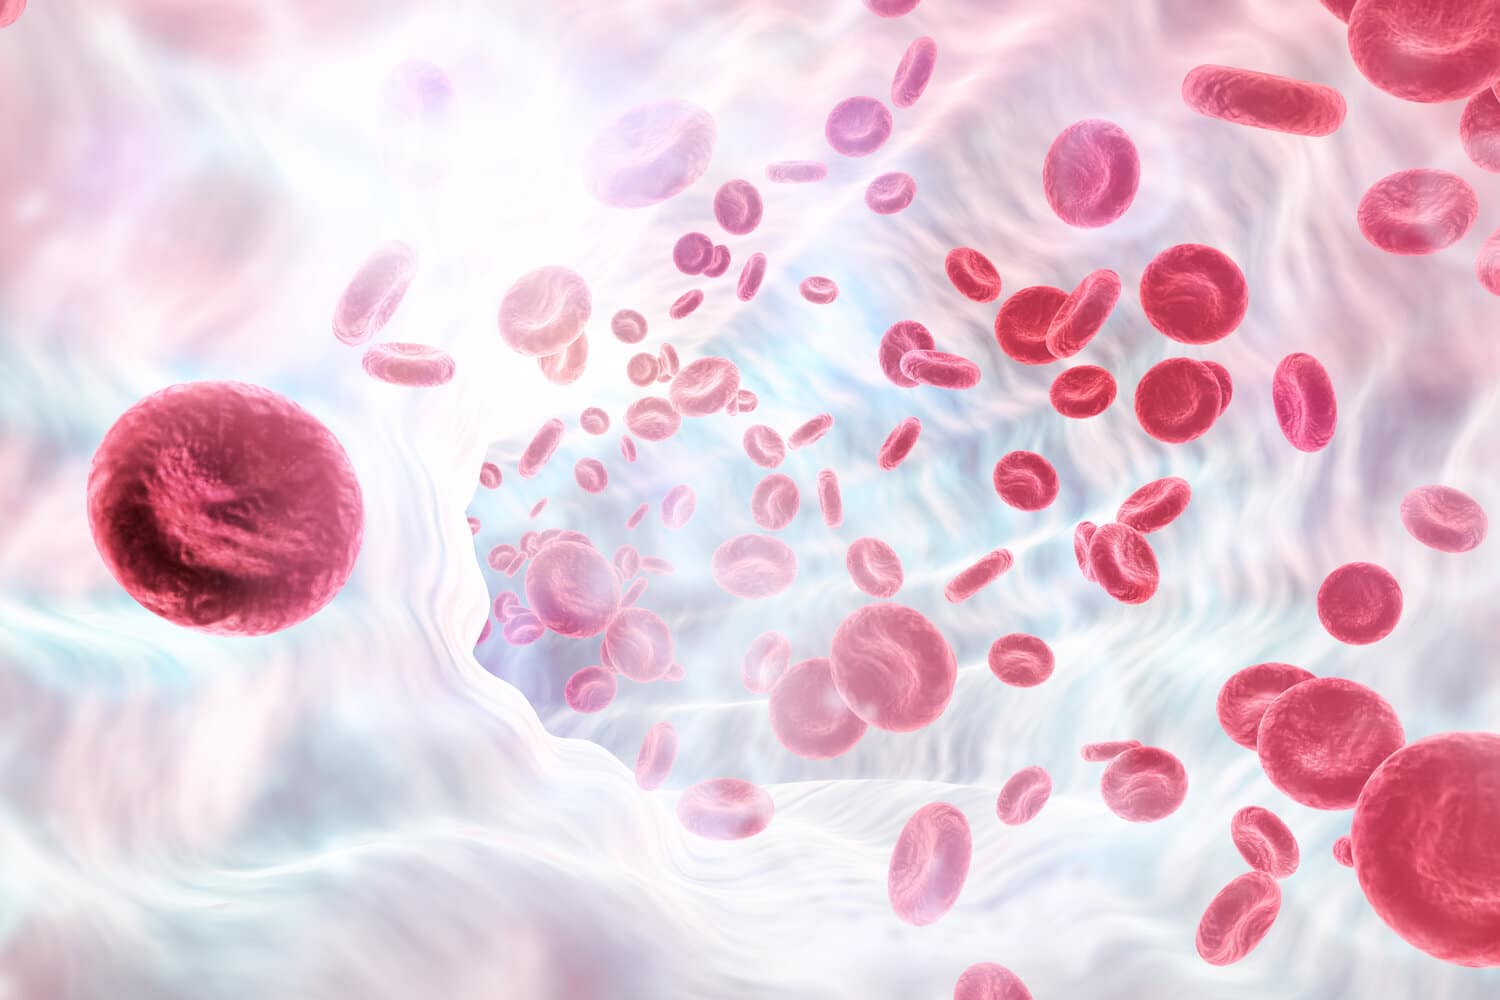 Blood cells illustration